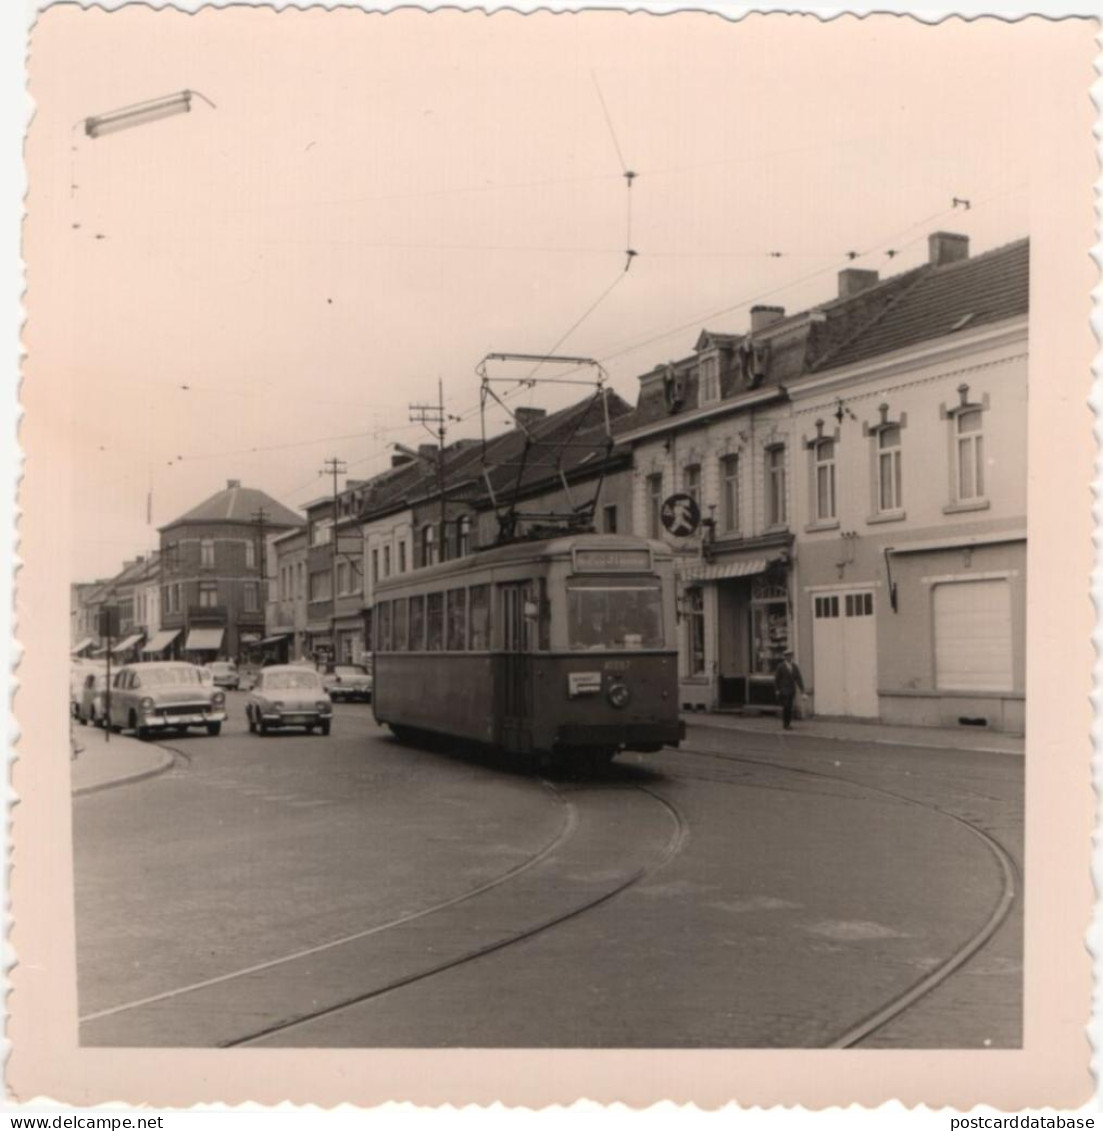 Tram - Jolimont 1960 - Photo - & Tram - Eisenbahnen